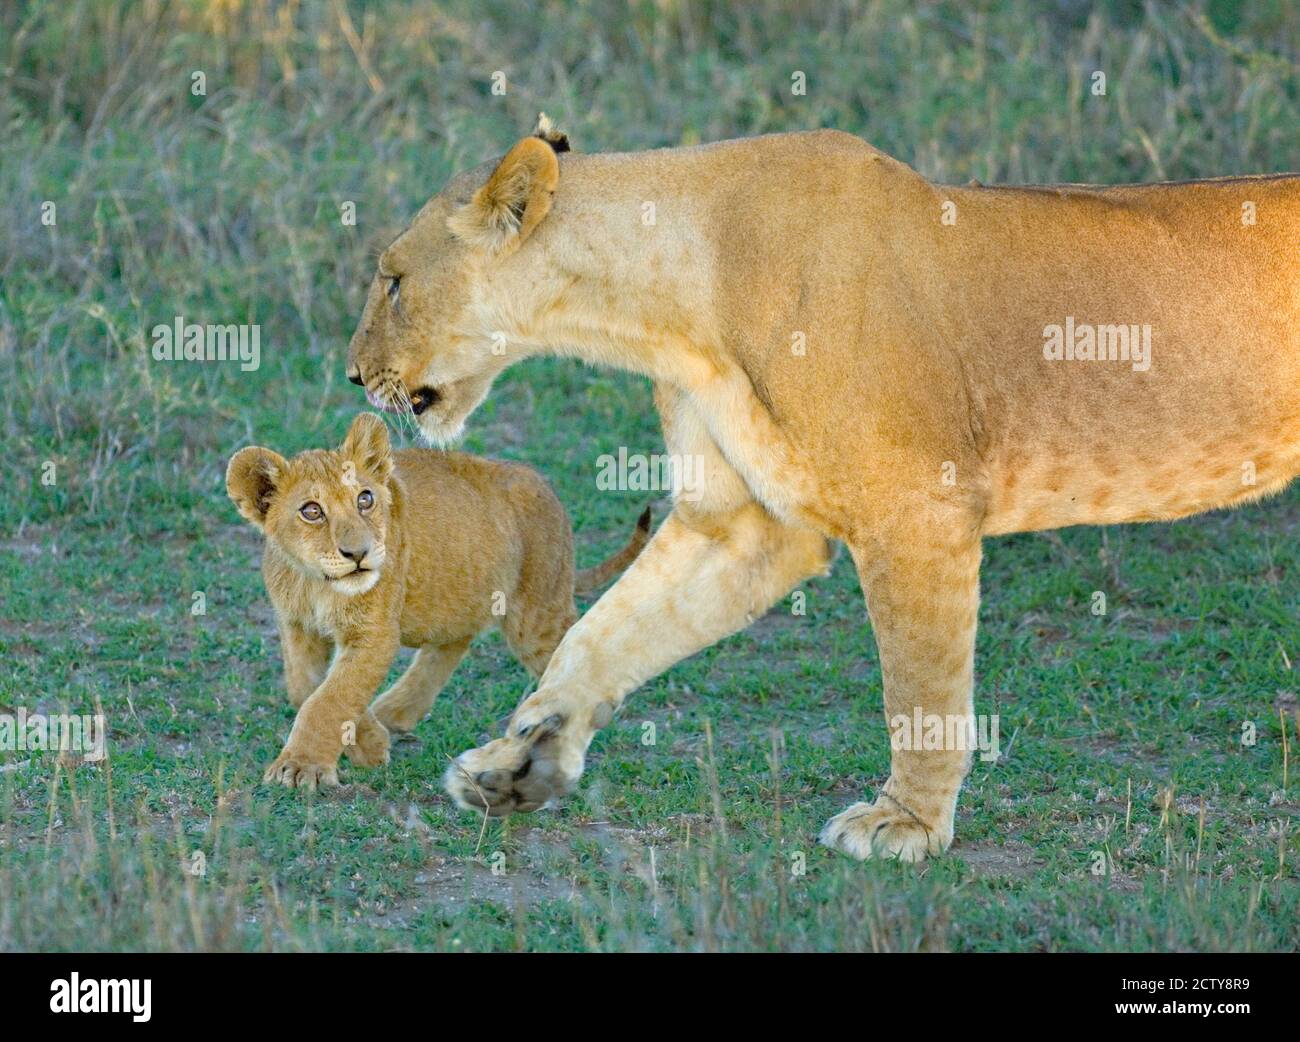 Profilo laterale di una leonessa che cammina con il suo cucciolo, Area di conservazione di Ngorongoro, Regione di Arusha, Tanzania (Panthera leo) Foto Stock